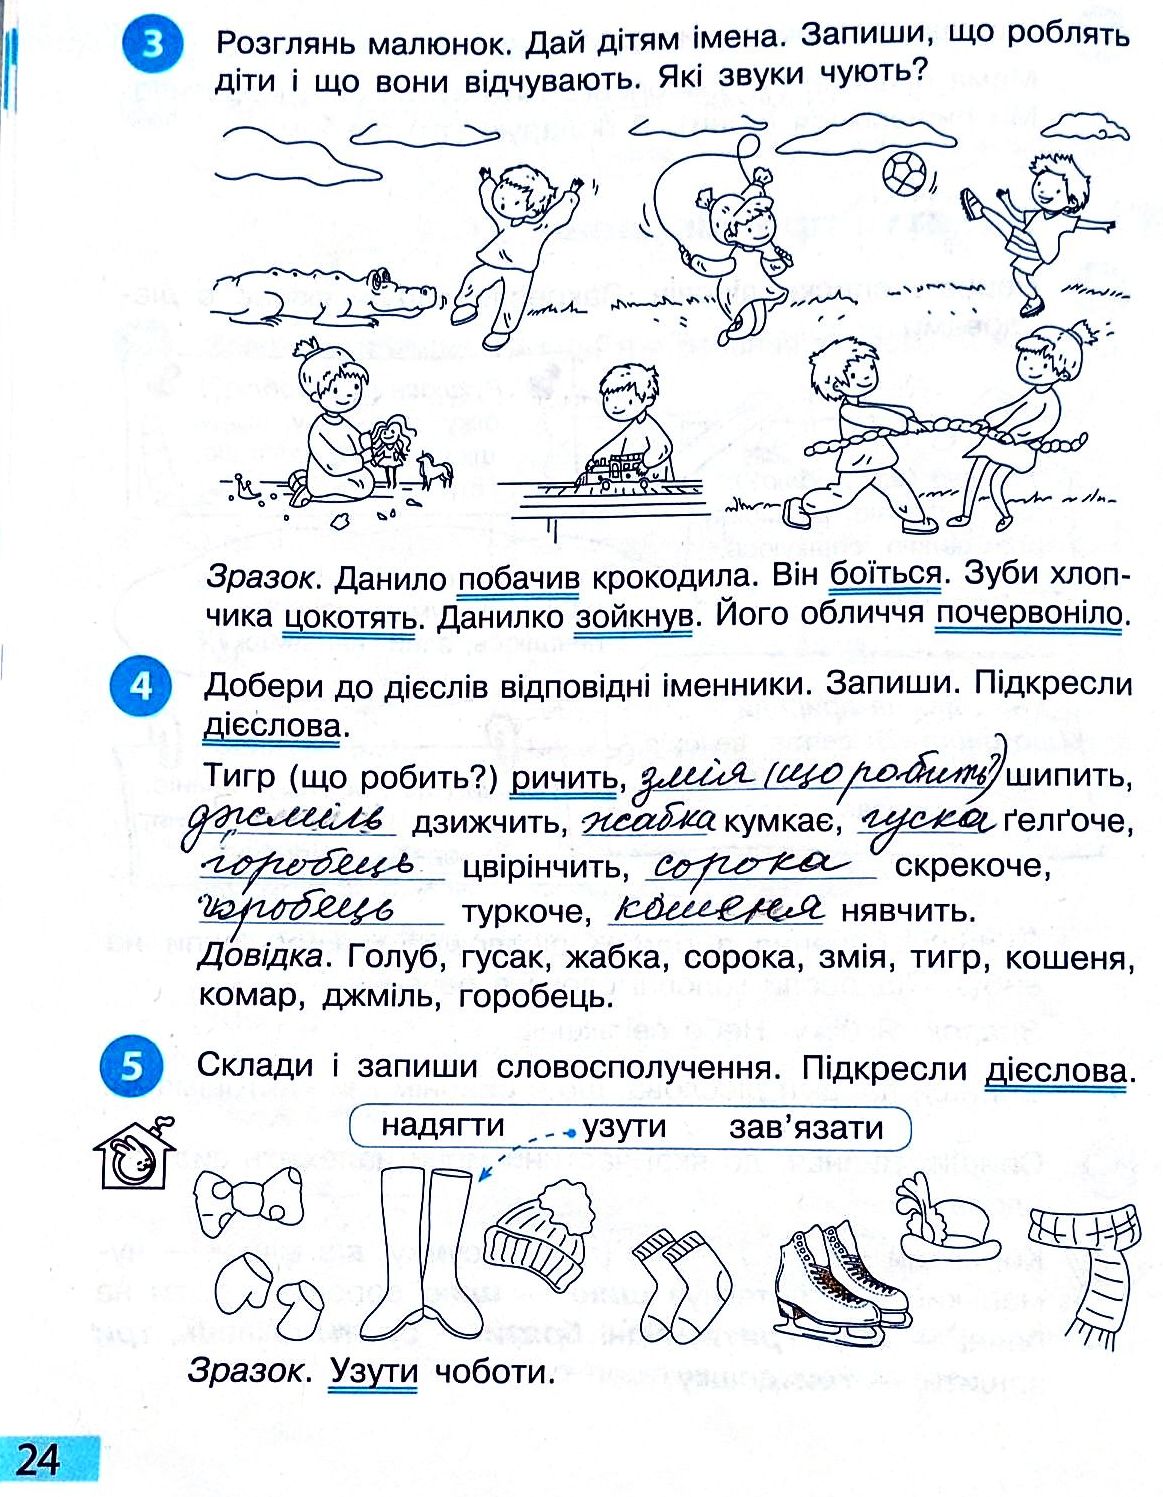 Сторінка 24 частина 2 гдз 3 клас робочий зошит українська мова Большакова